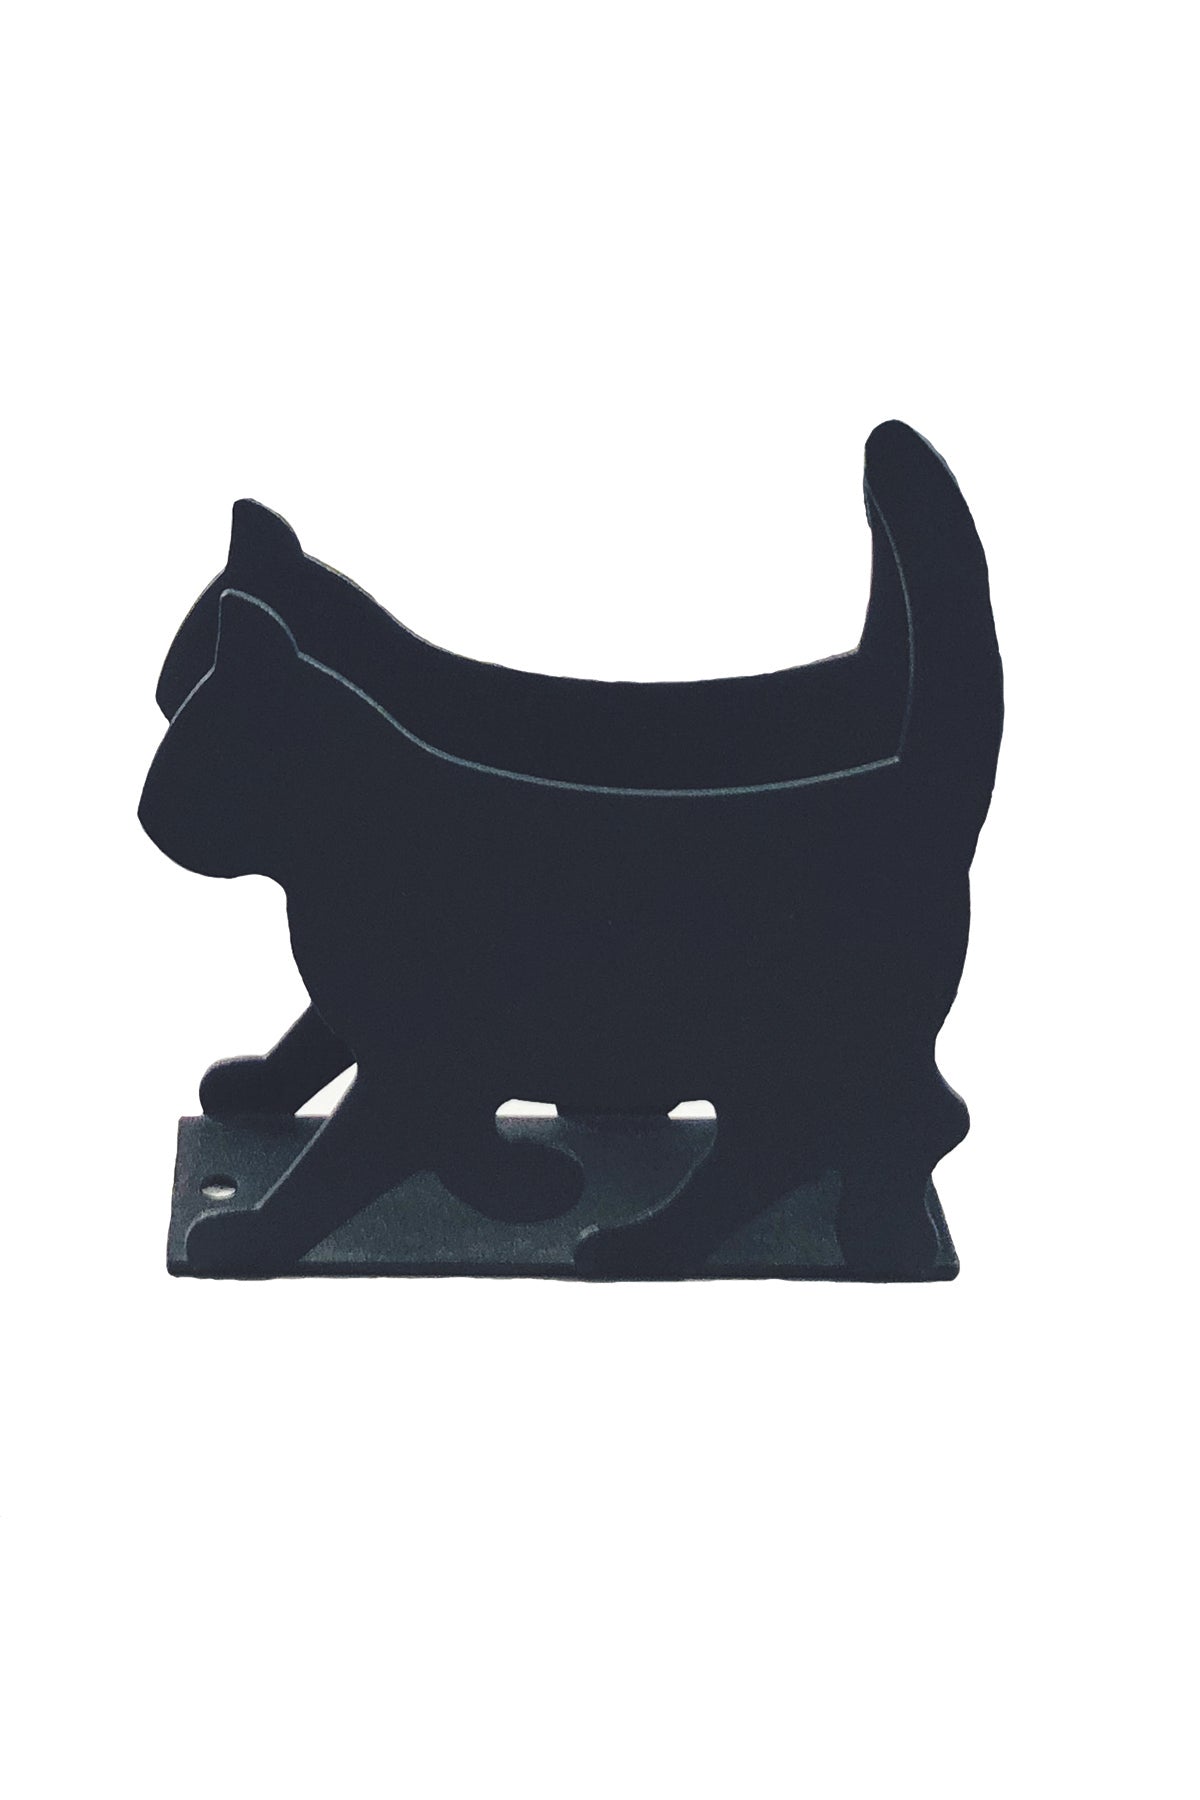 Napkin holder, cat, 11cm